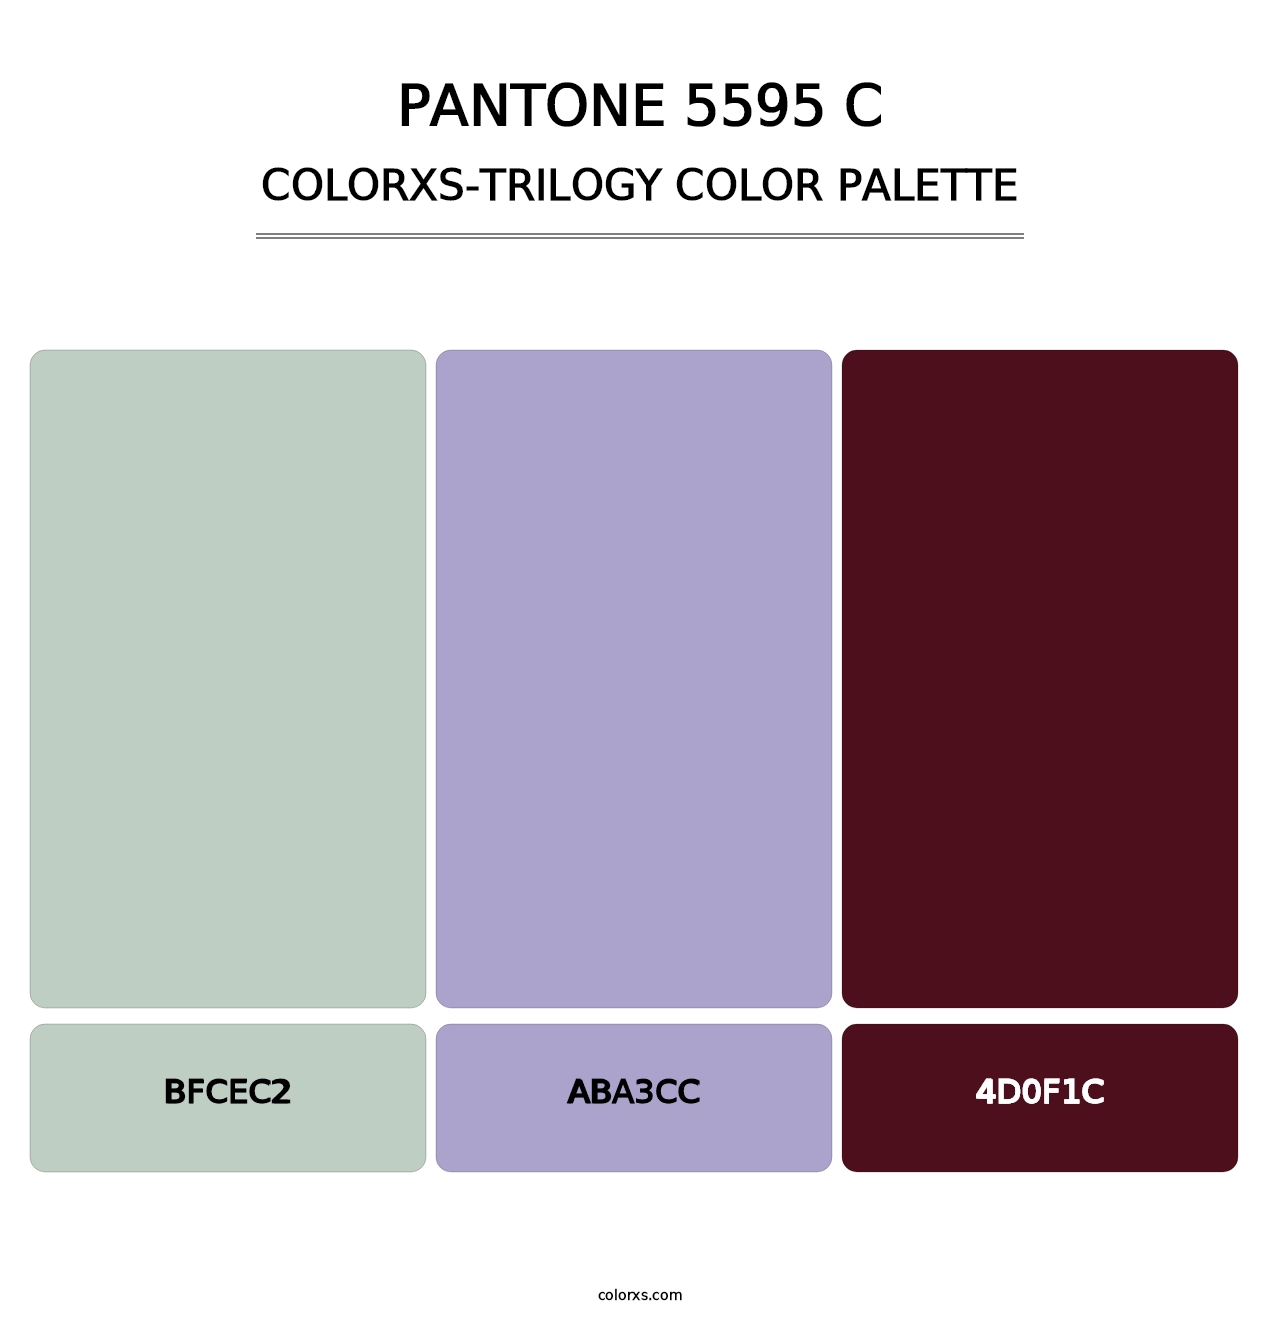 PANTONE 5595 C - Colorxs Trilogy Palette